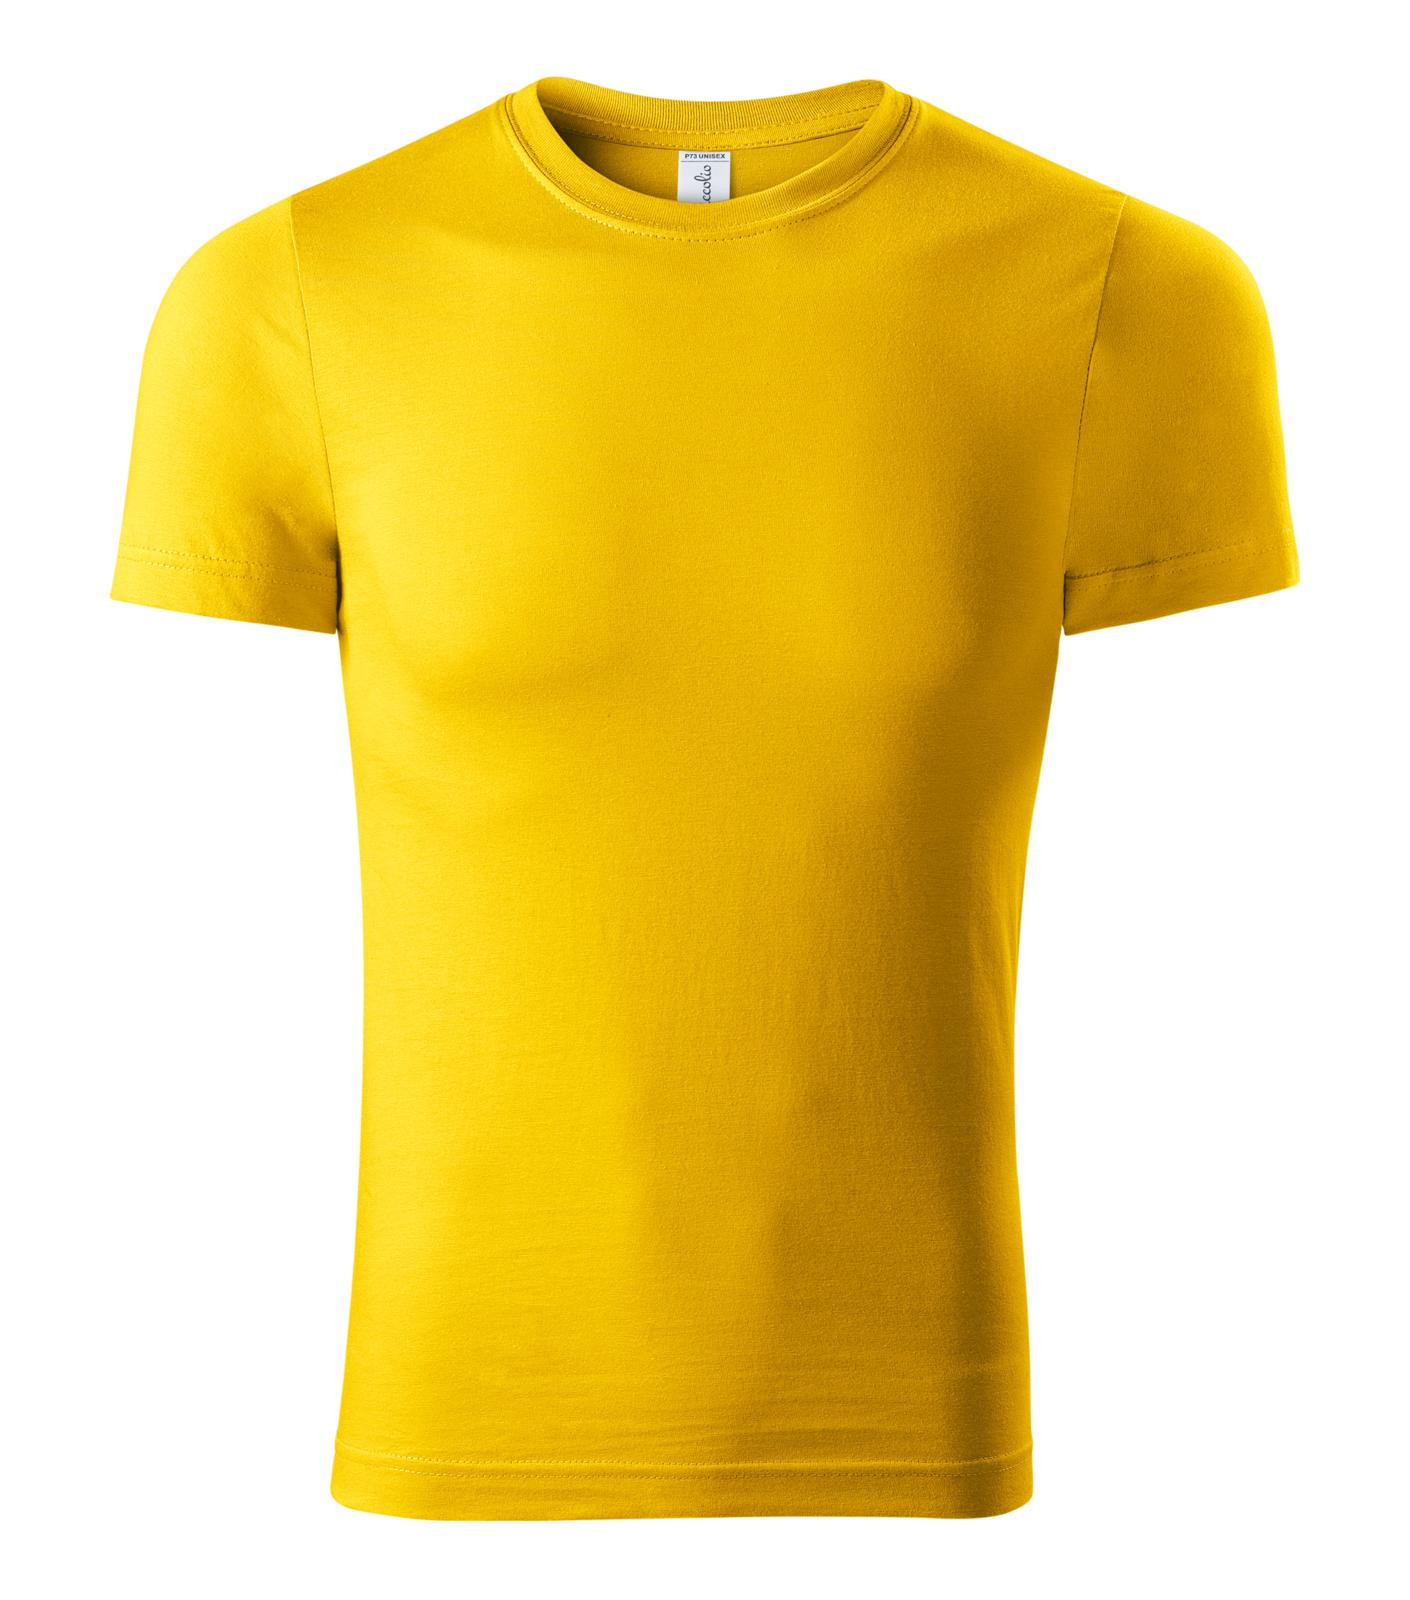 Unisex tričko Piccolio Paint P73 - veľkosť: L, farba: žltá